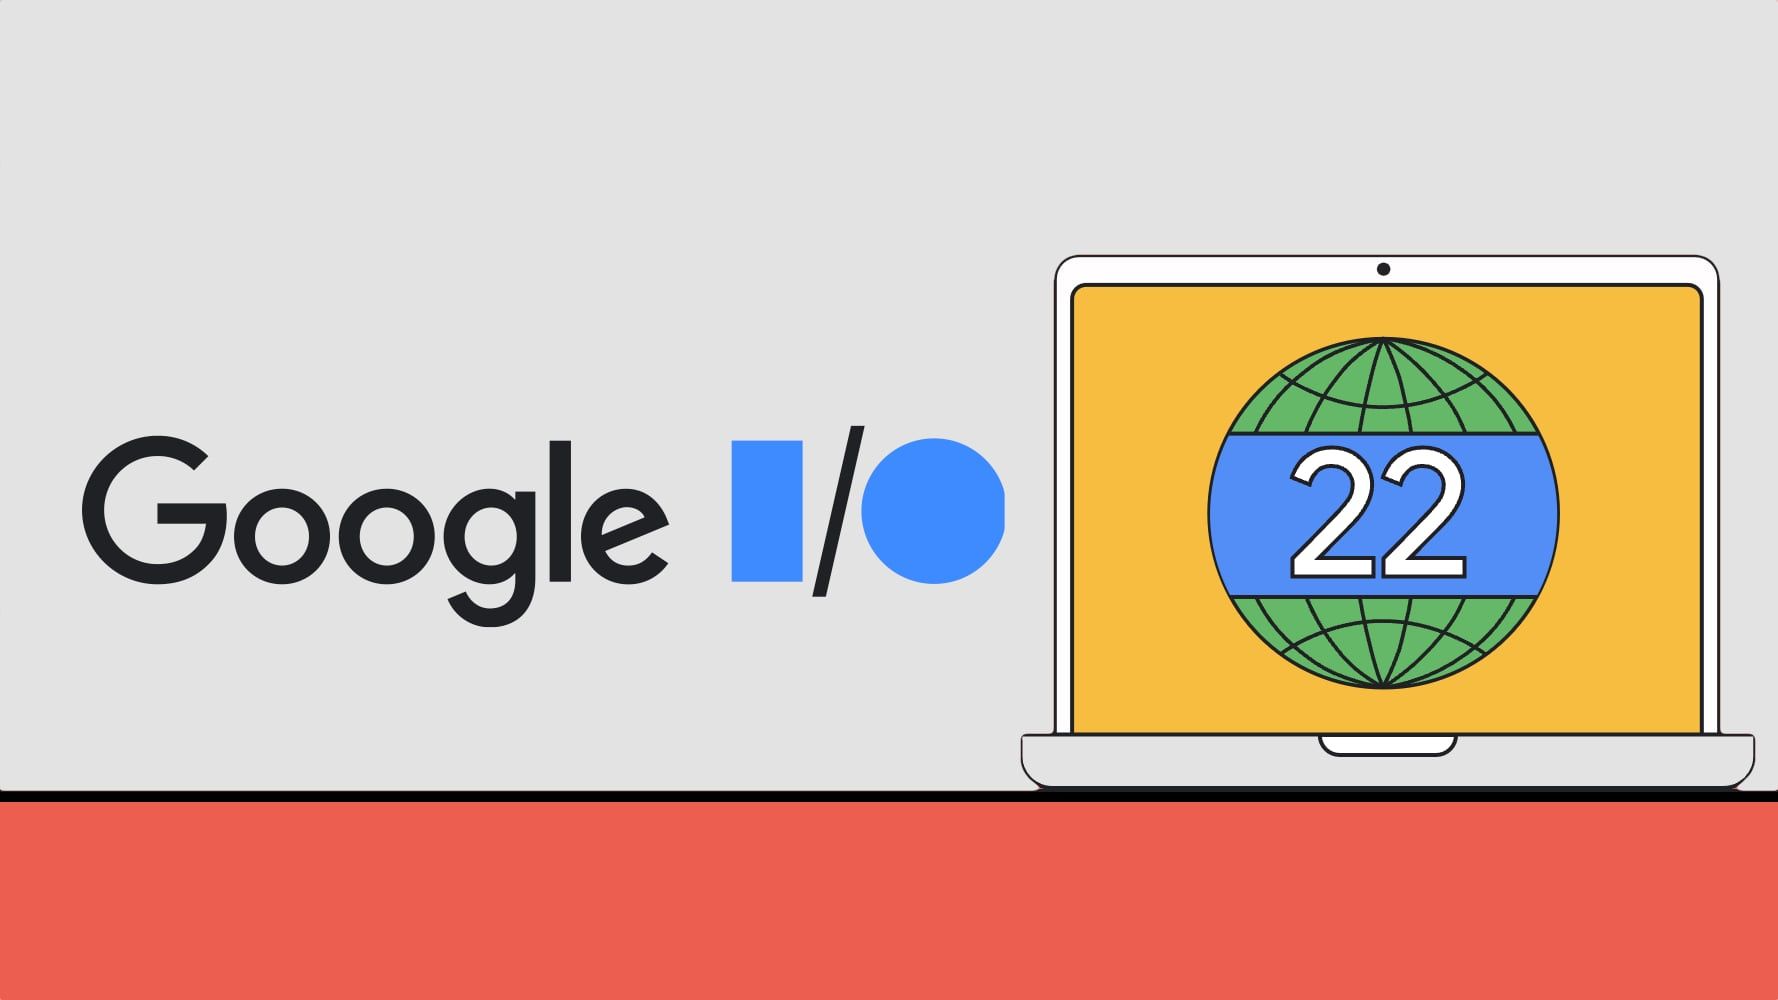 Dzisiaj omówimy Google I/O 2022, rejestrację, harmonogram i to, co zostanie ogłoszone, takie jak Google Pixel 6a, jeśli plotki są prawdziwe.